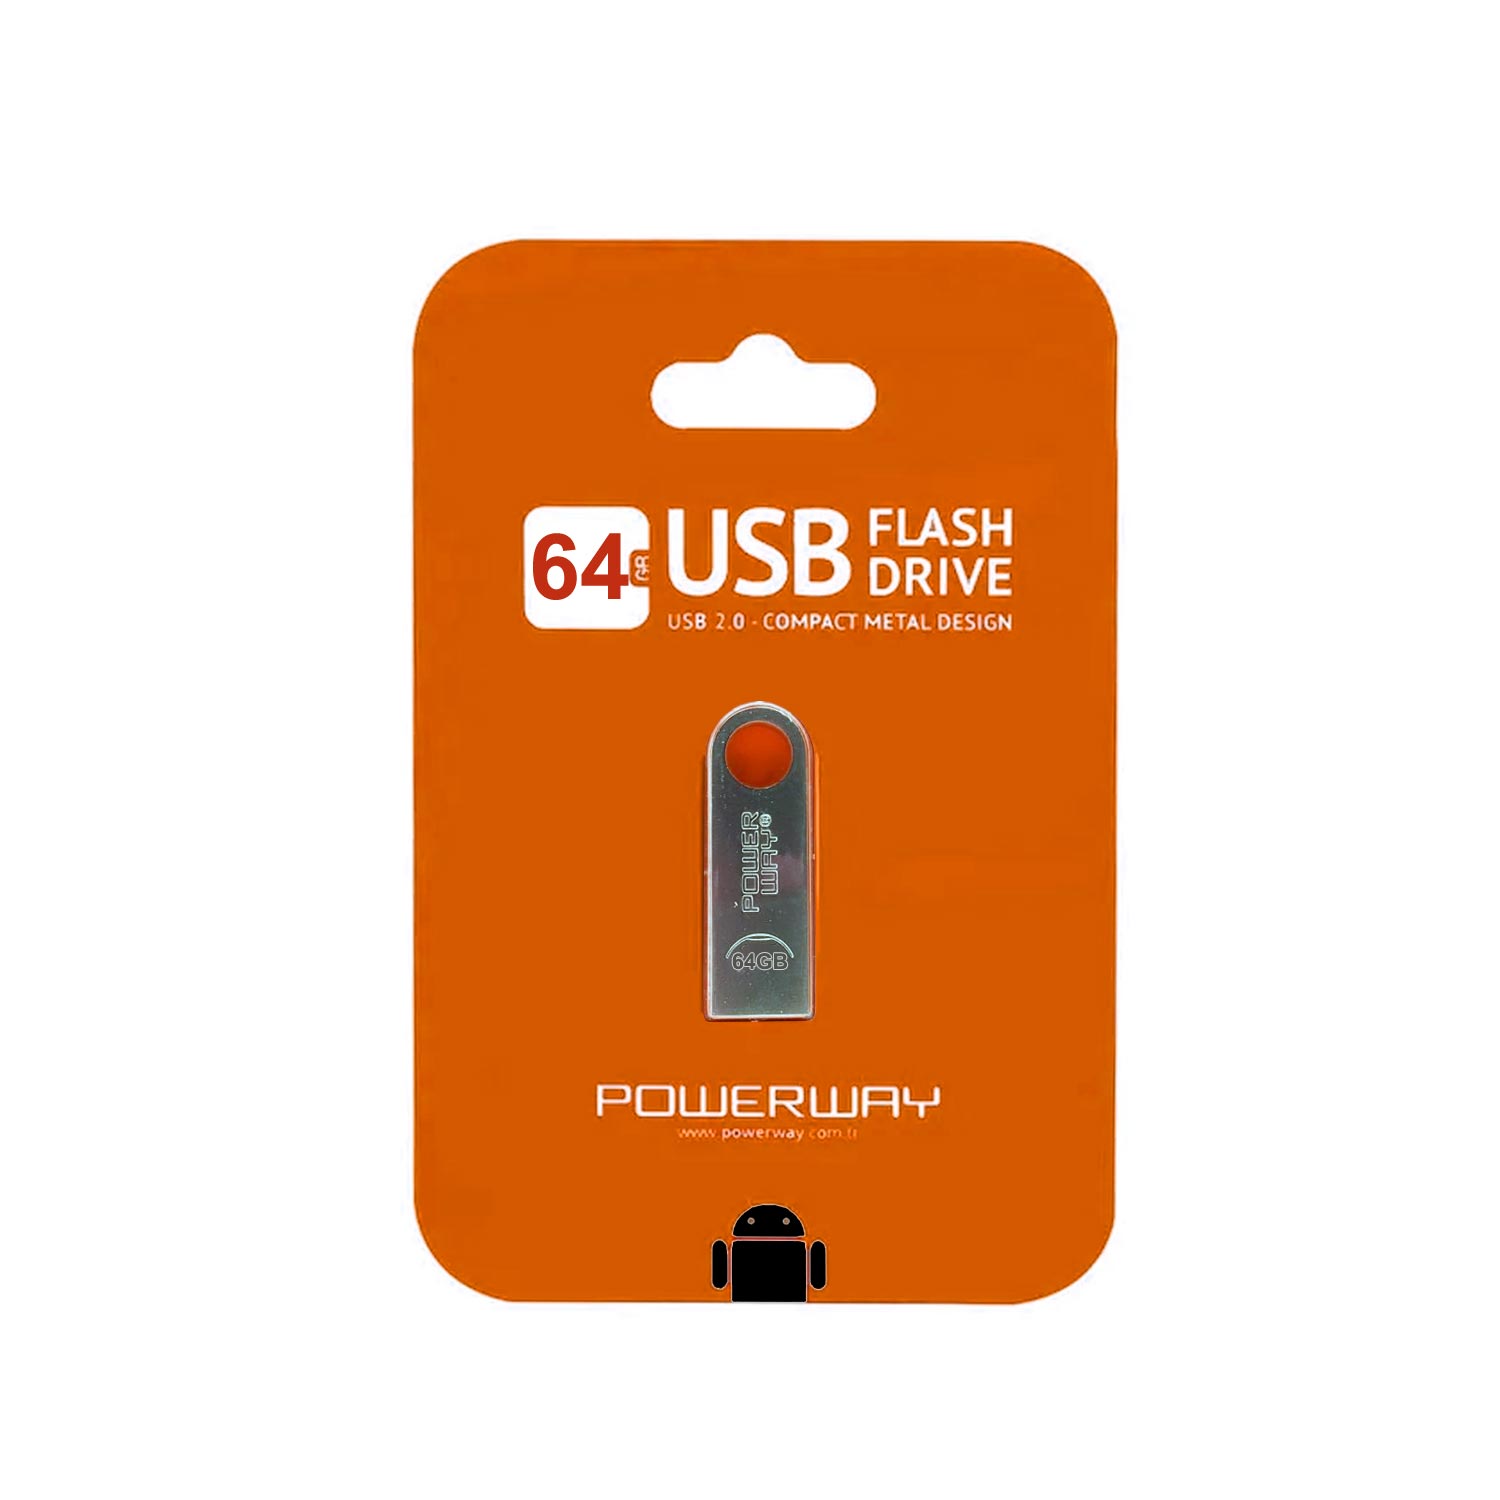 USB FLASH BELLEK 64GB METAL POWERWAY